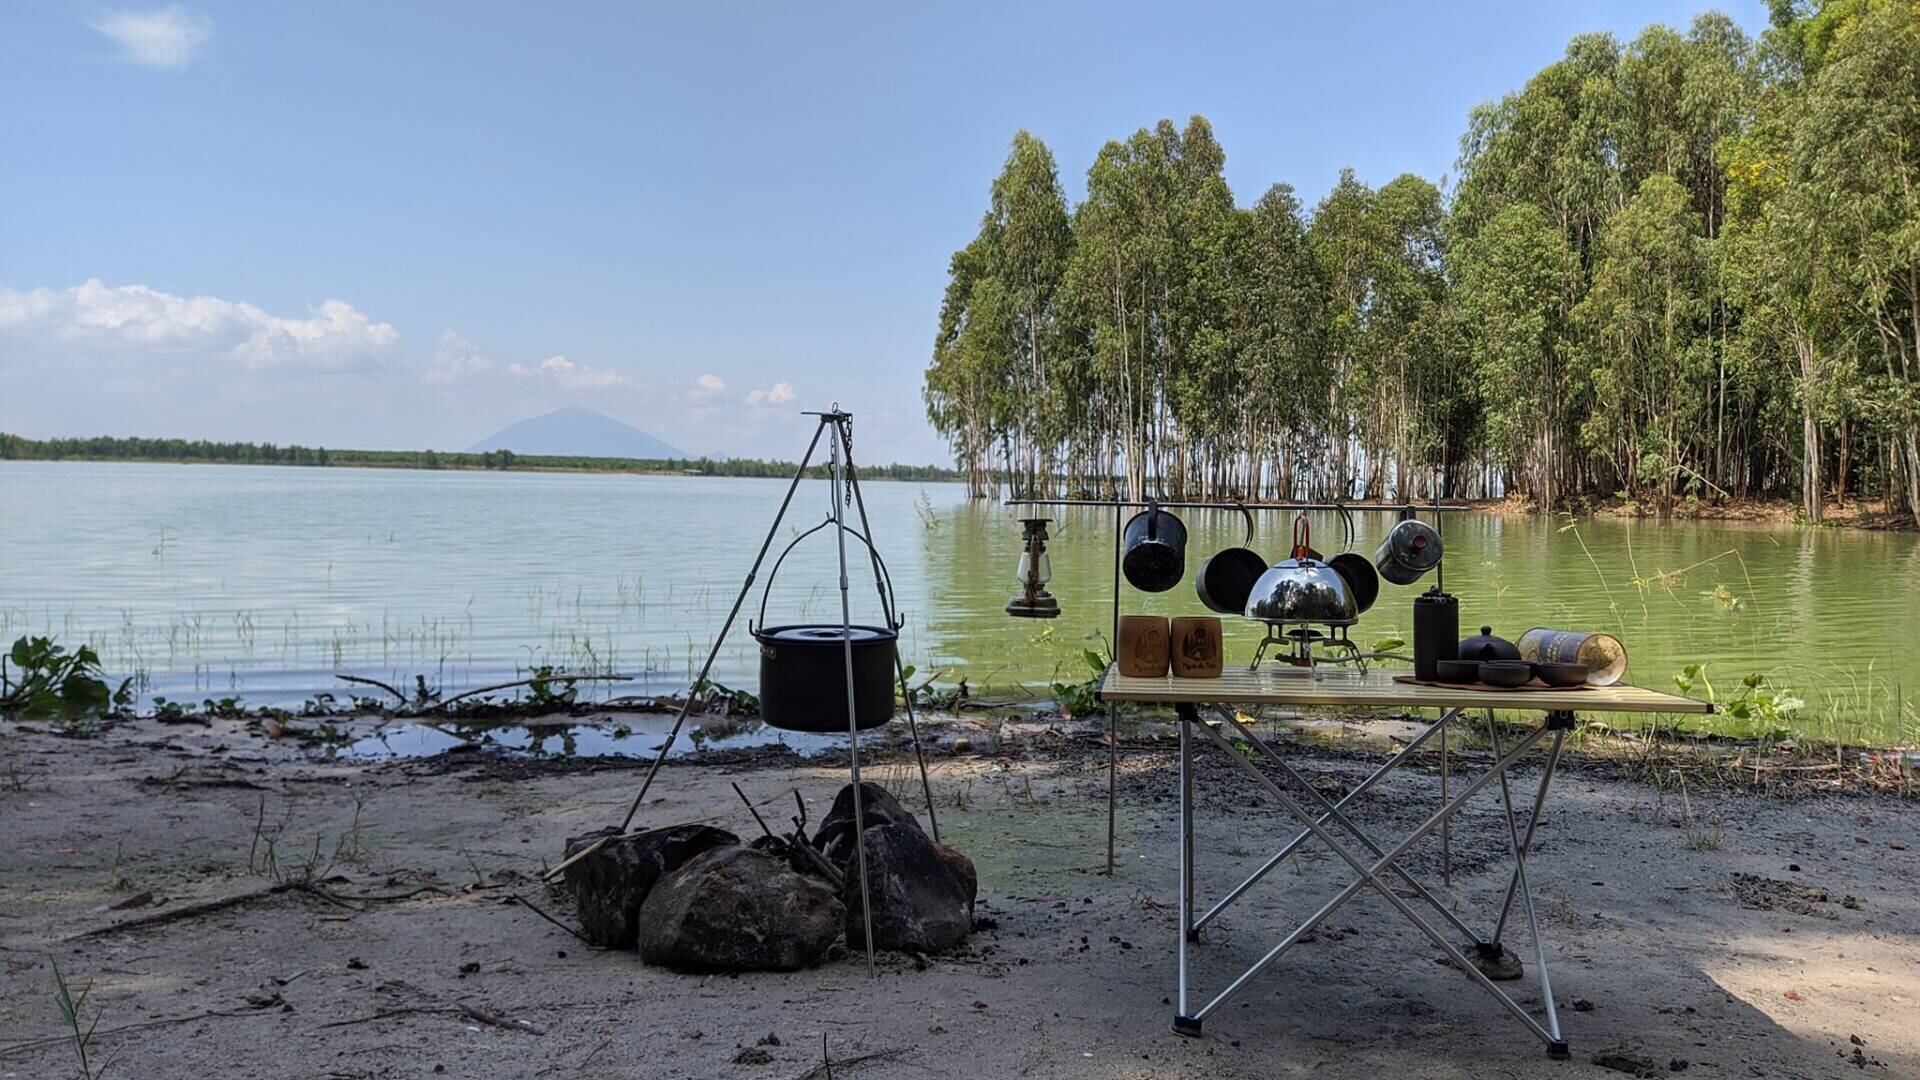 Ngao Du Camping nằm cạnh một hồ nước nhân tạo nên không khí rất trong mát.